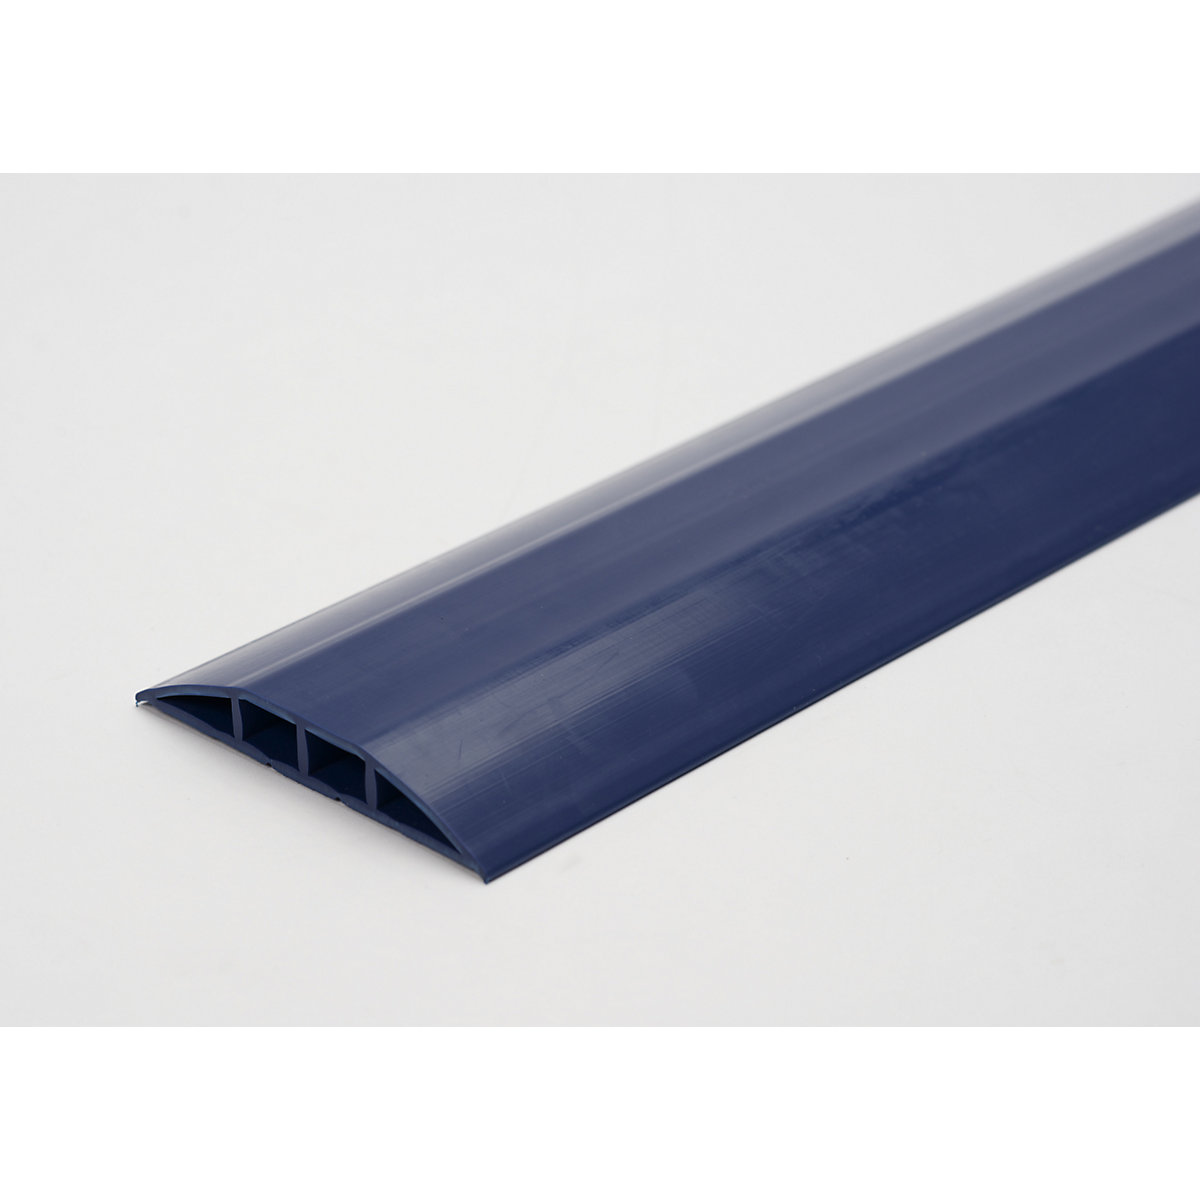 Canalina passacavo in plastica, per cavi e tubi flessibili con Ø fino a 10 mm, blu, 2 camere, lunghezza 1,5 m-3